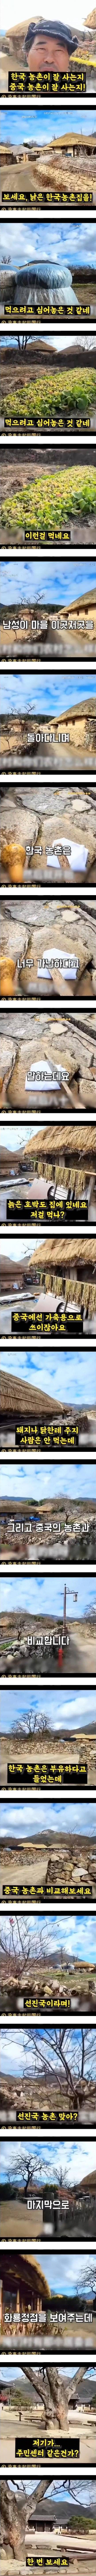 한국 농촌의 실상이라며 중국에 올라온 영상 - 3